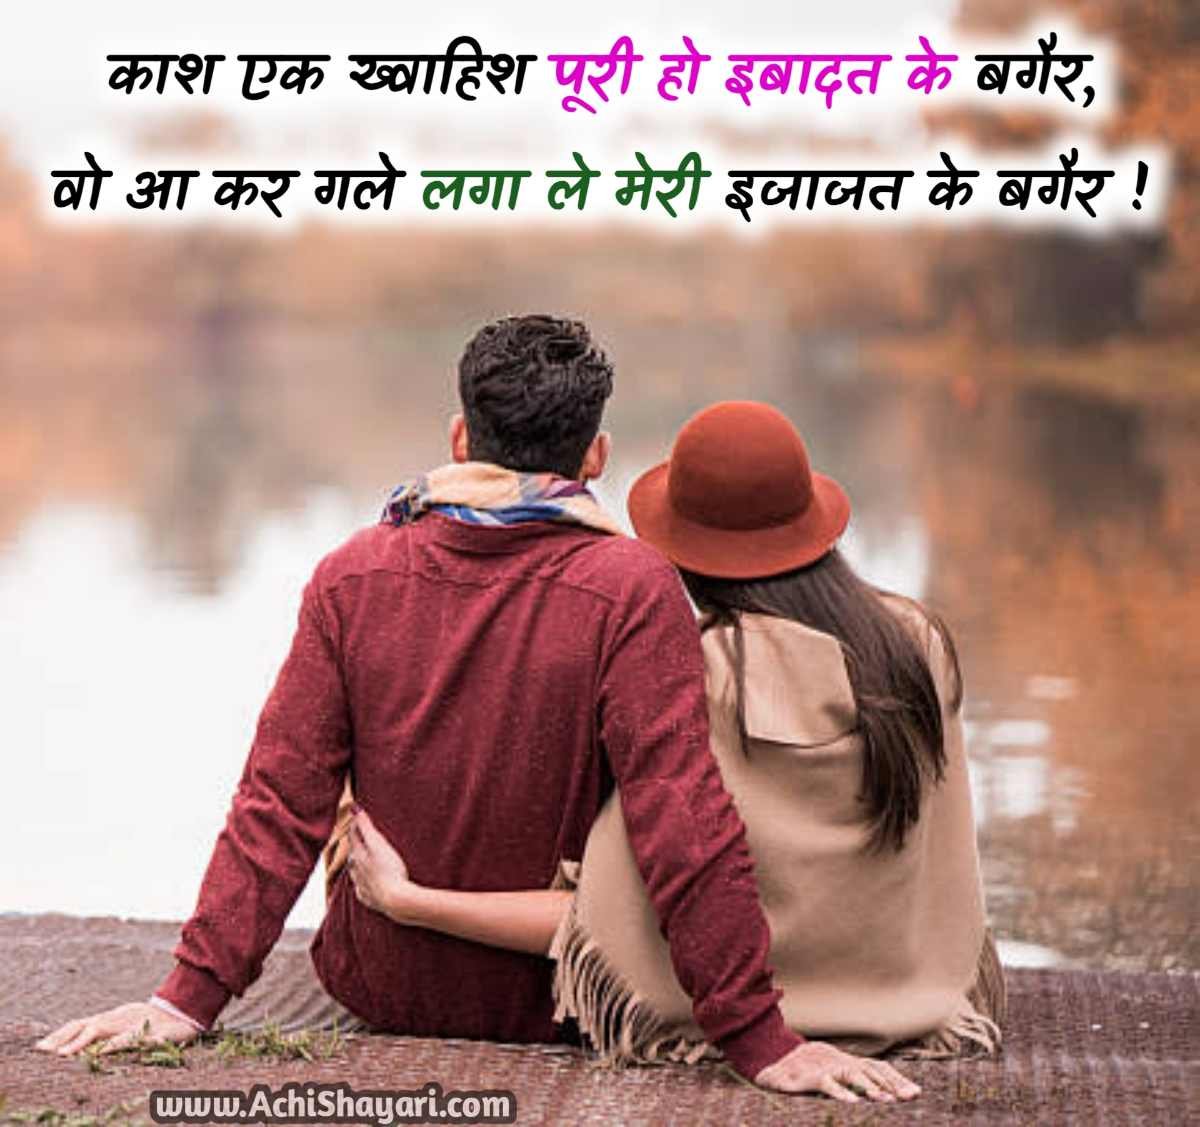 Best Romantic Shayari Hindi